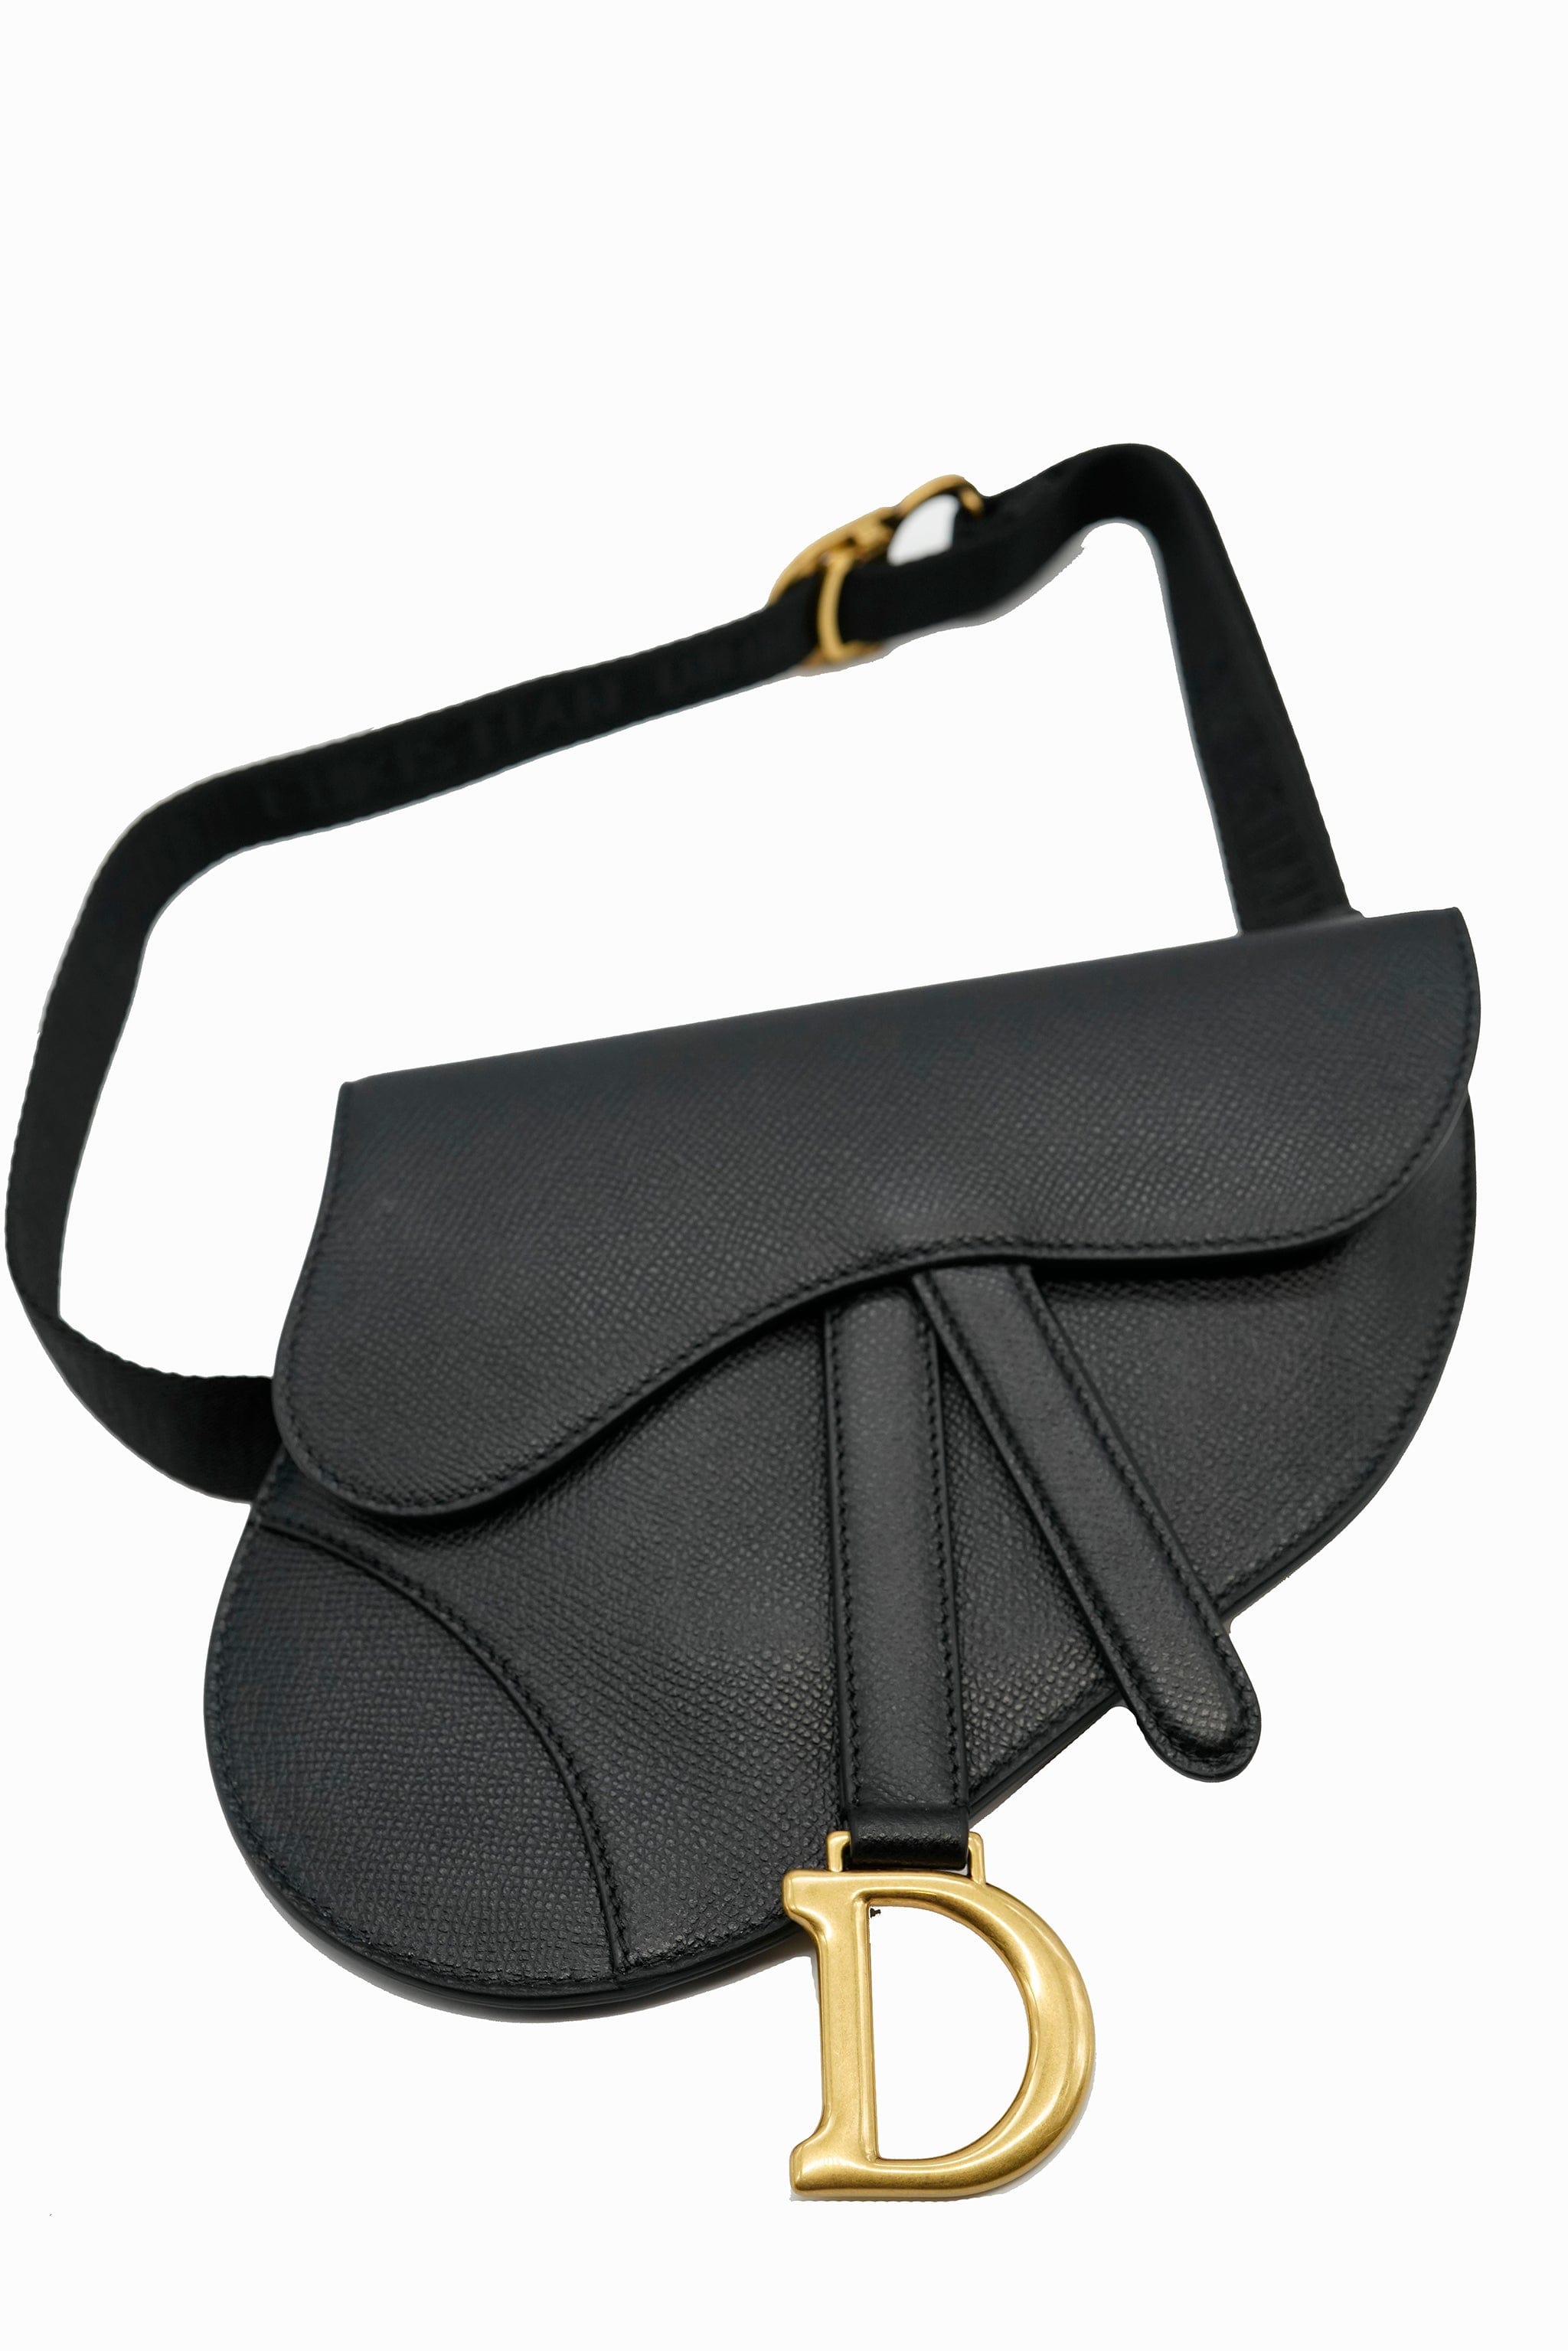 Christian dior so black belt bag ASL5803 – LuxuryPromise